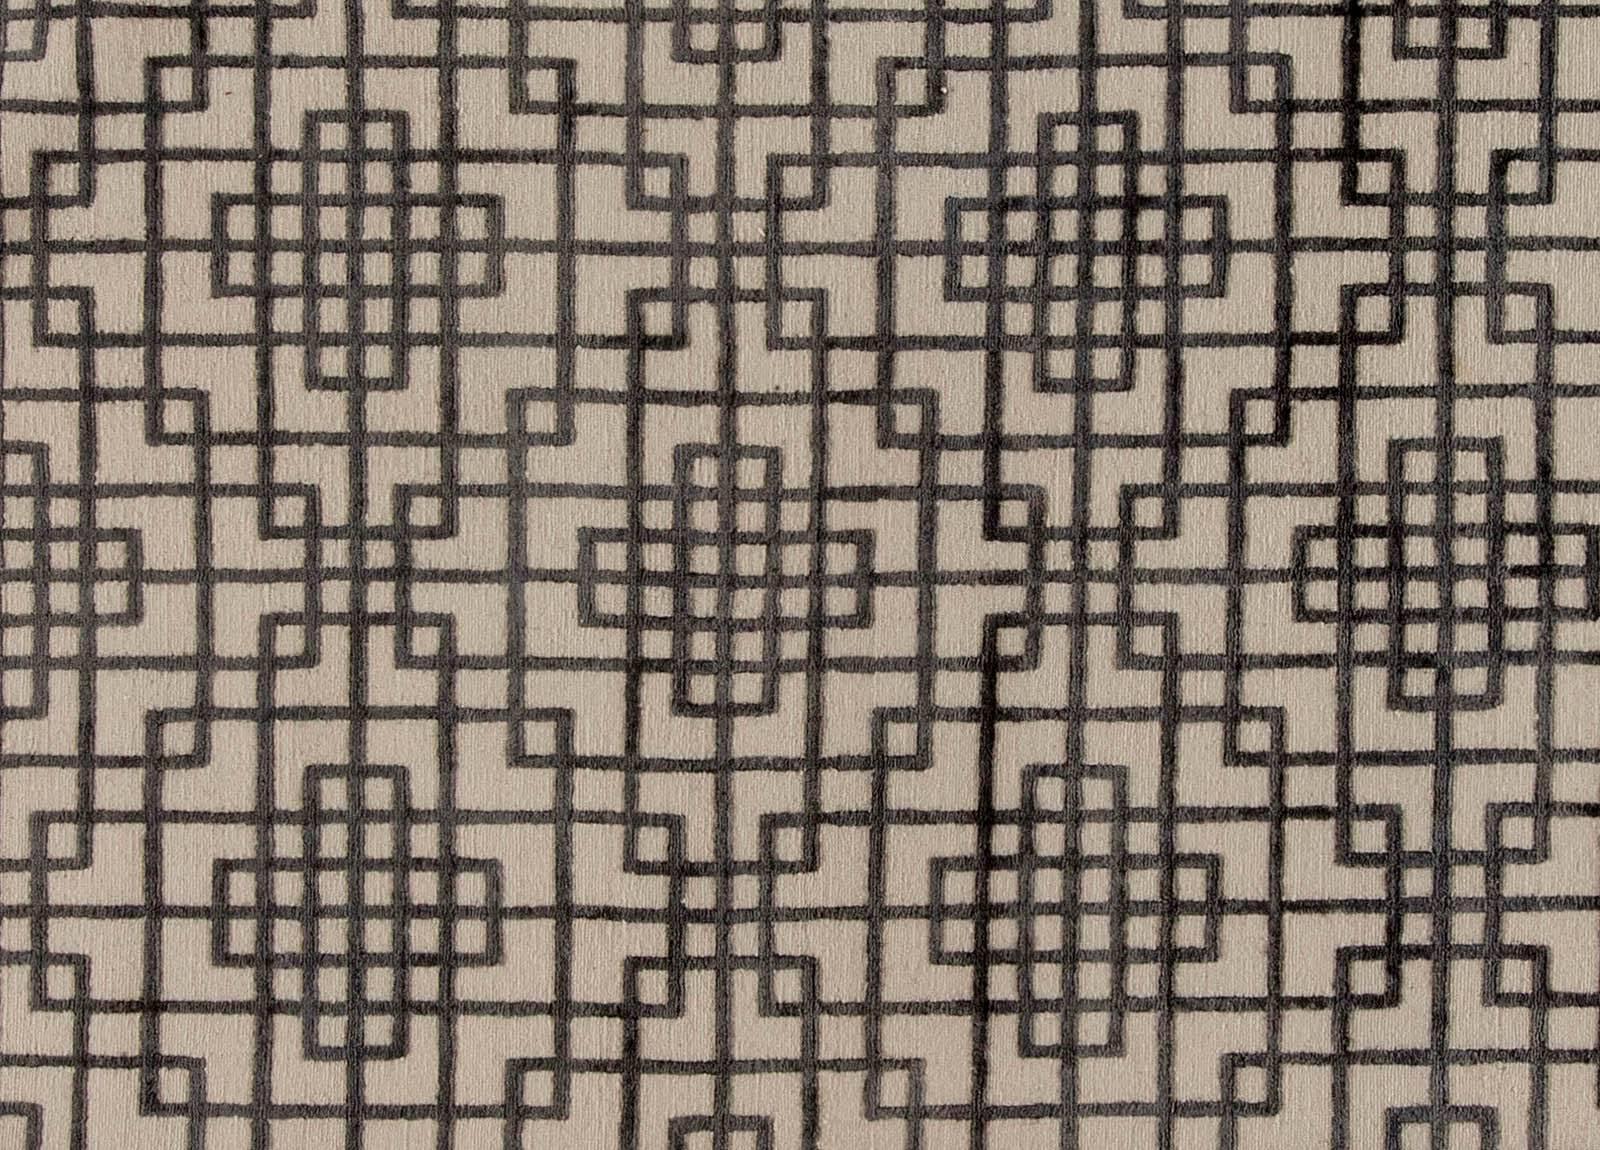 Zeitgenössischer tibetischer Silberteppich im Art-Déco-Stil von Doris Leslie Blau.
Größe: 12,1